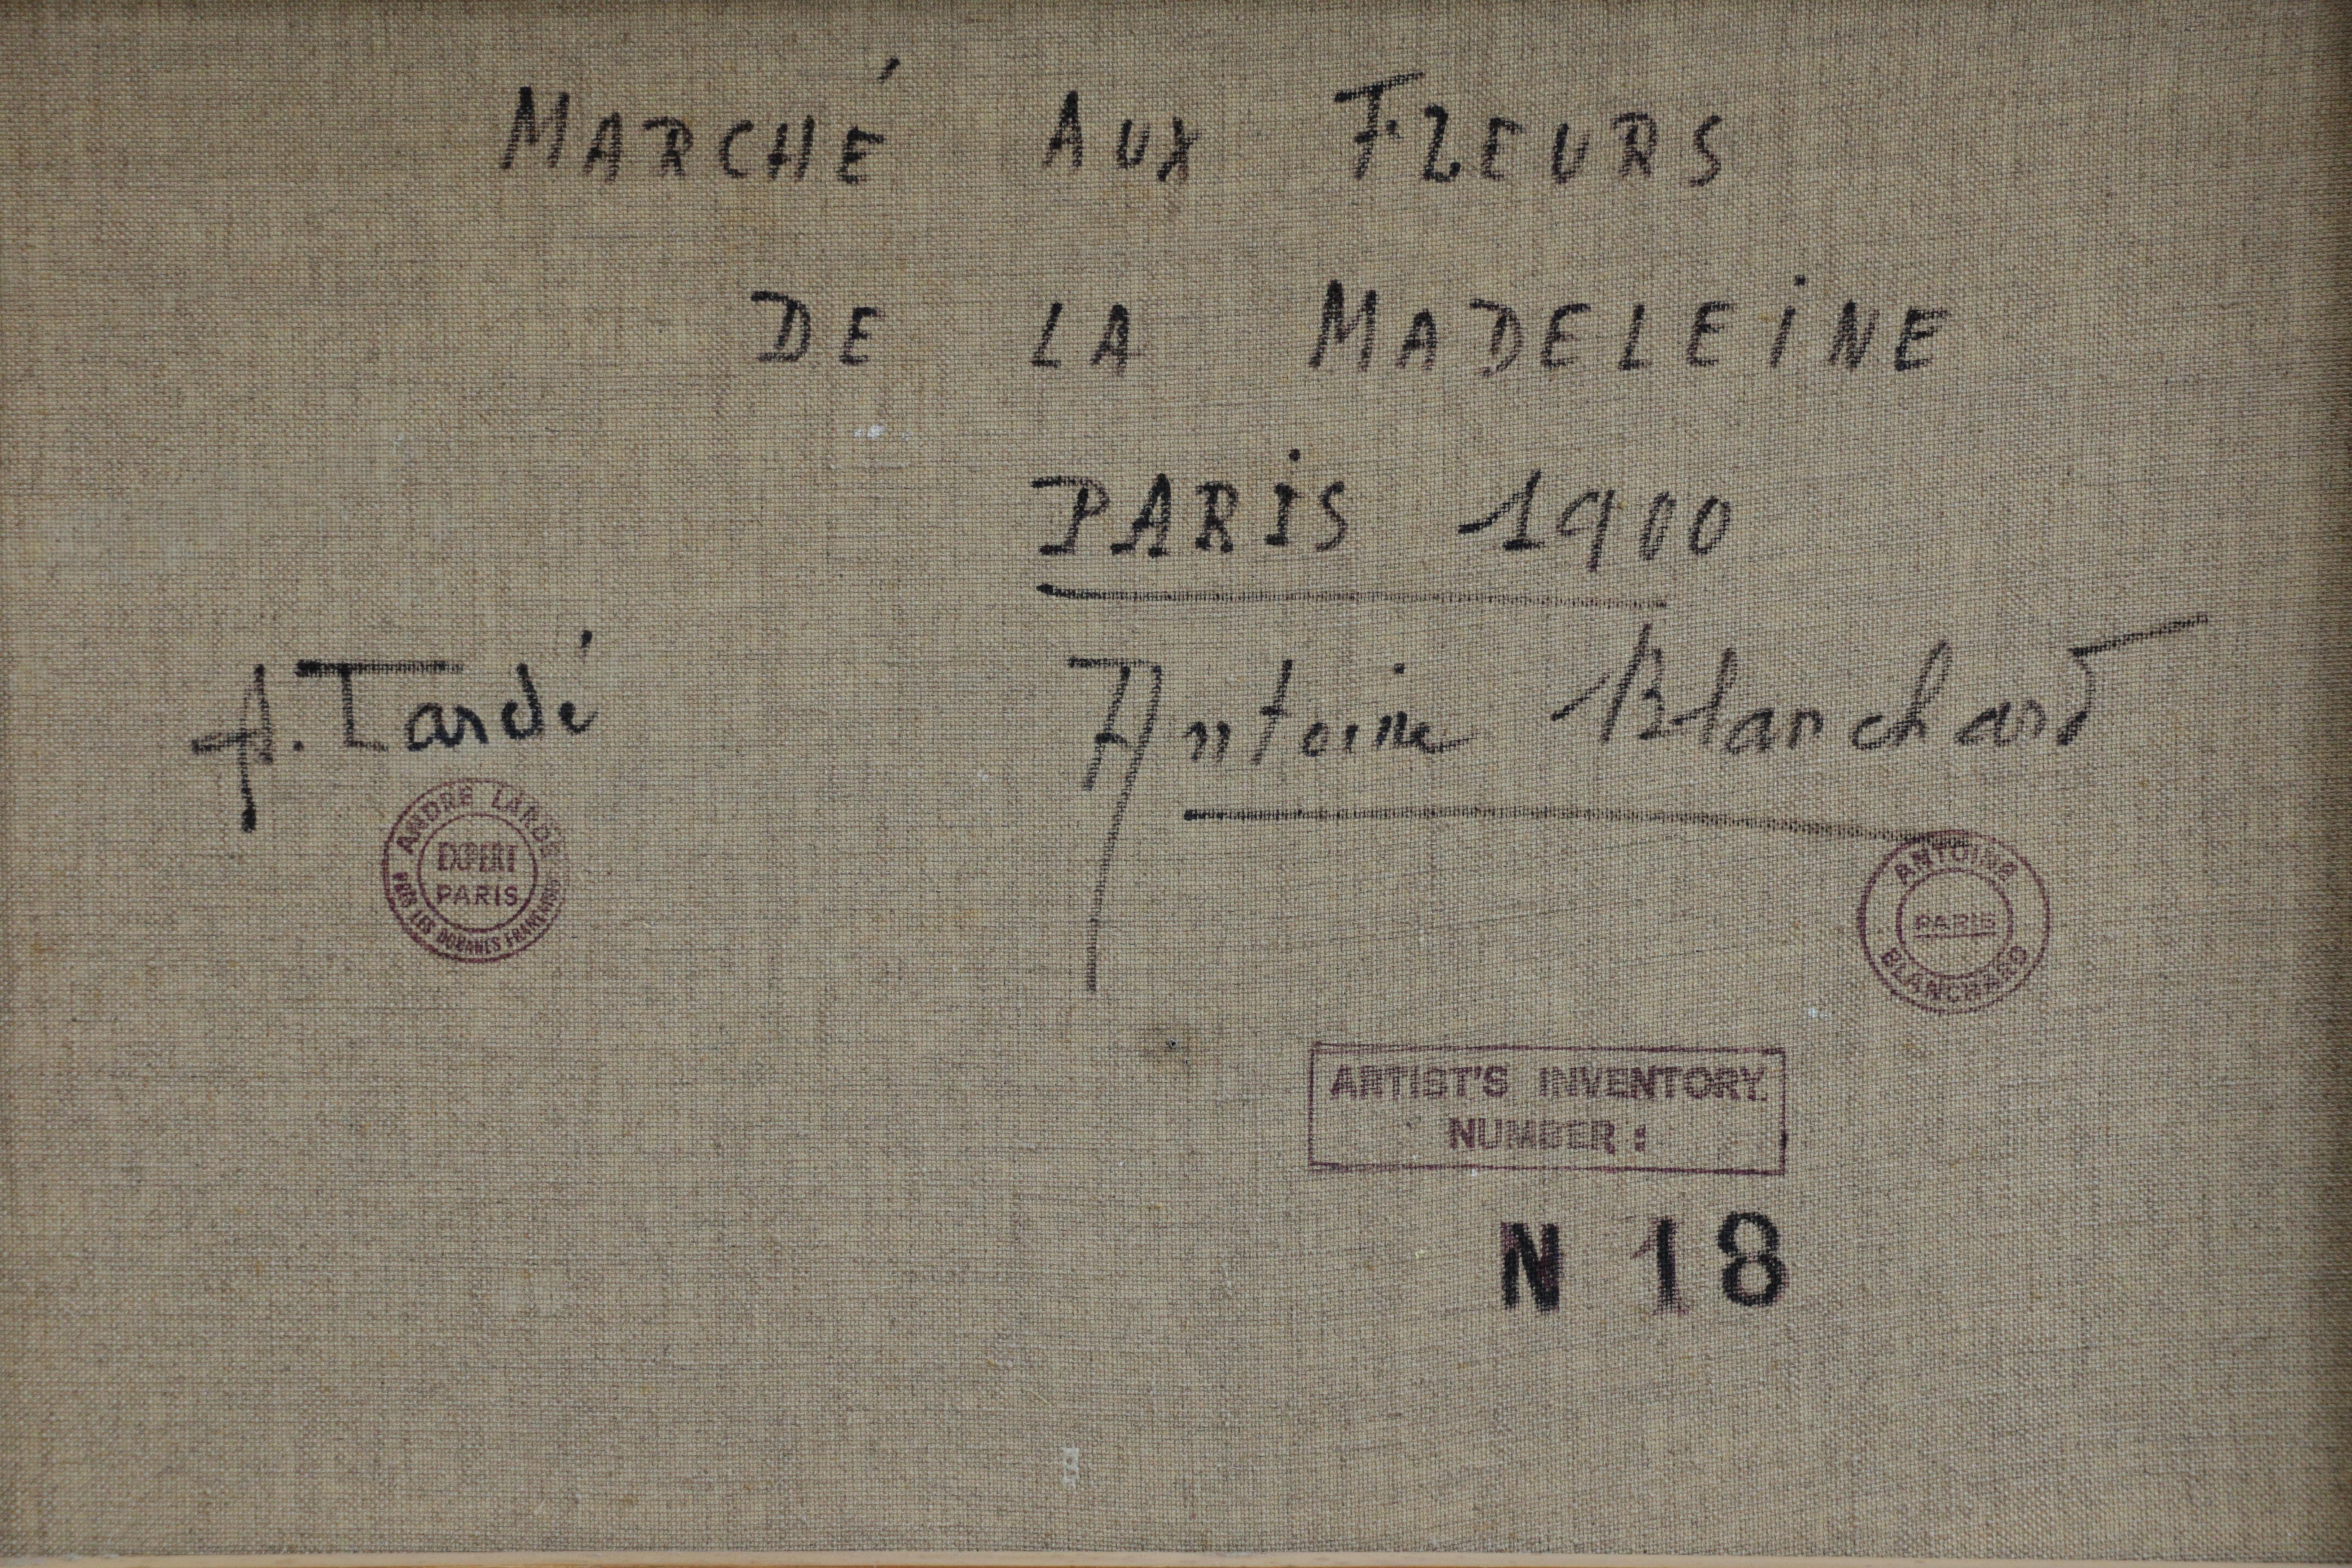 Marché aux Fleurs - de la Madeleine - 20th Century, City Landscape by Blanchard 4